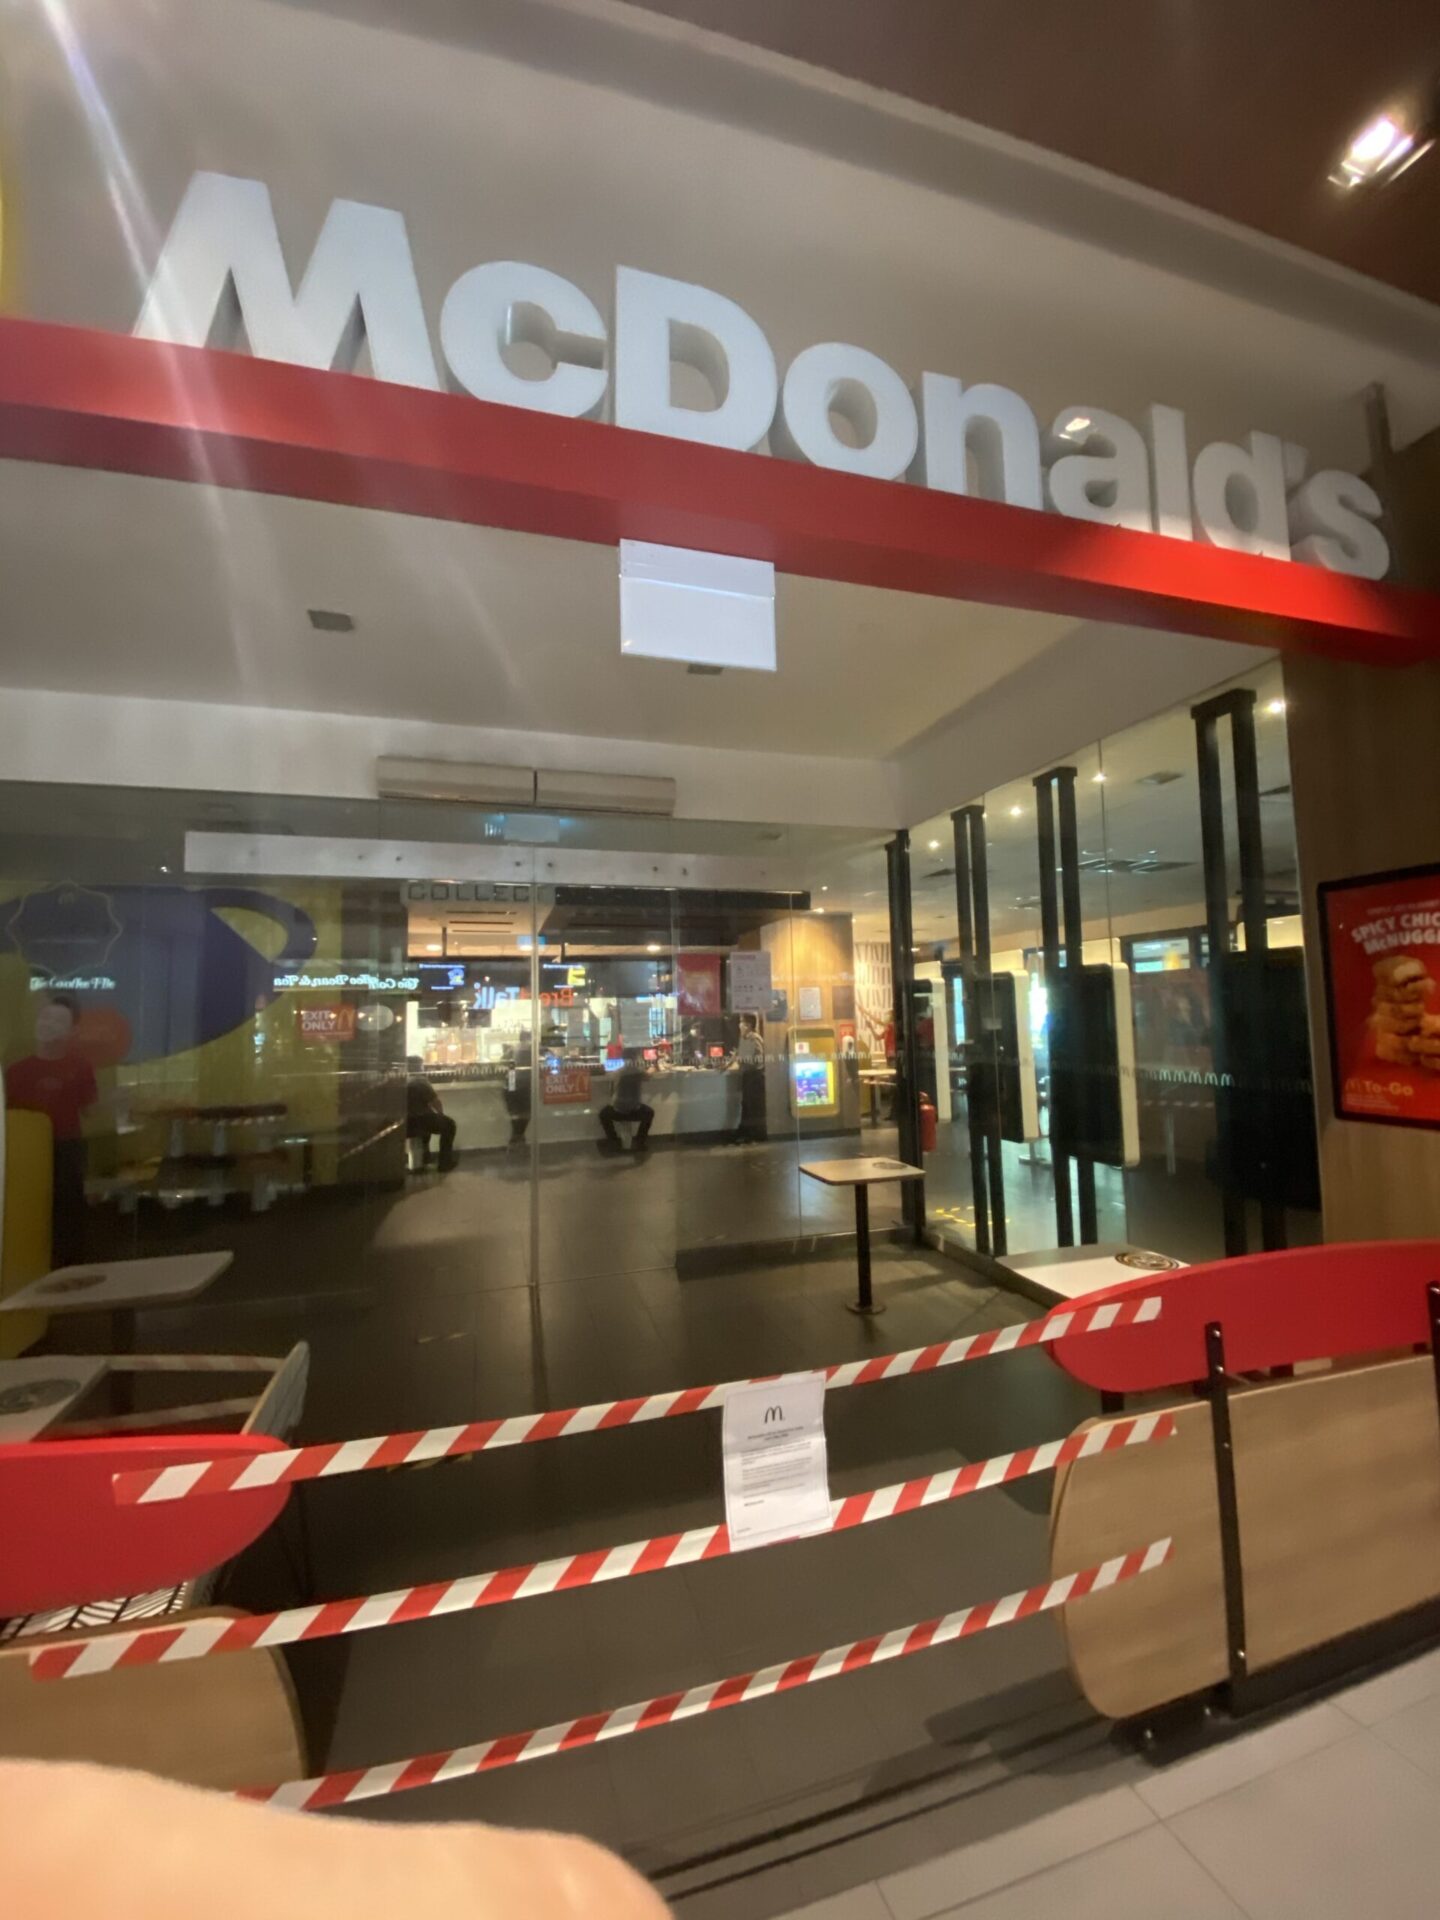 シンガポールのマクドナルド全店舗が一時閉店。デリバリーも不可、5月4日まで。